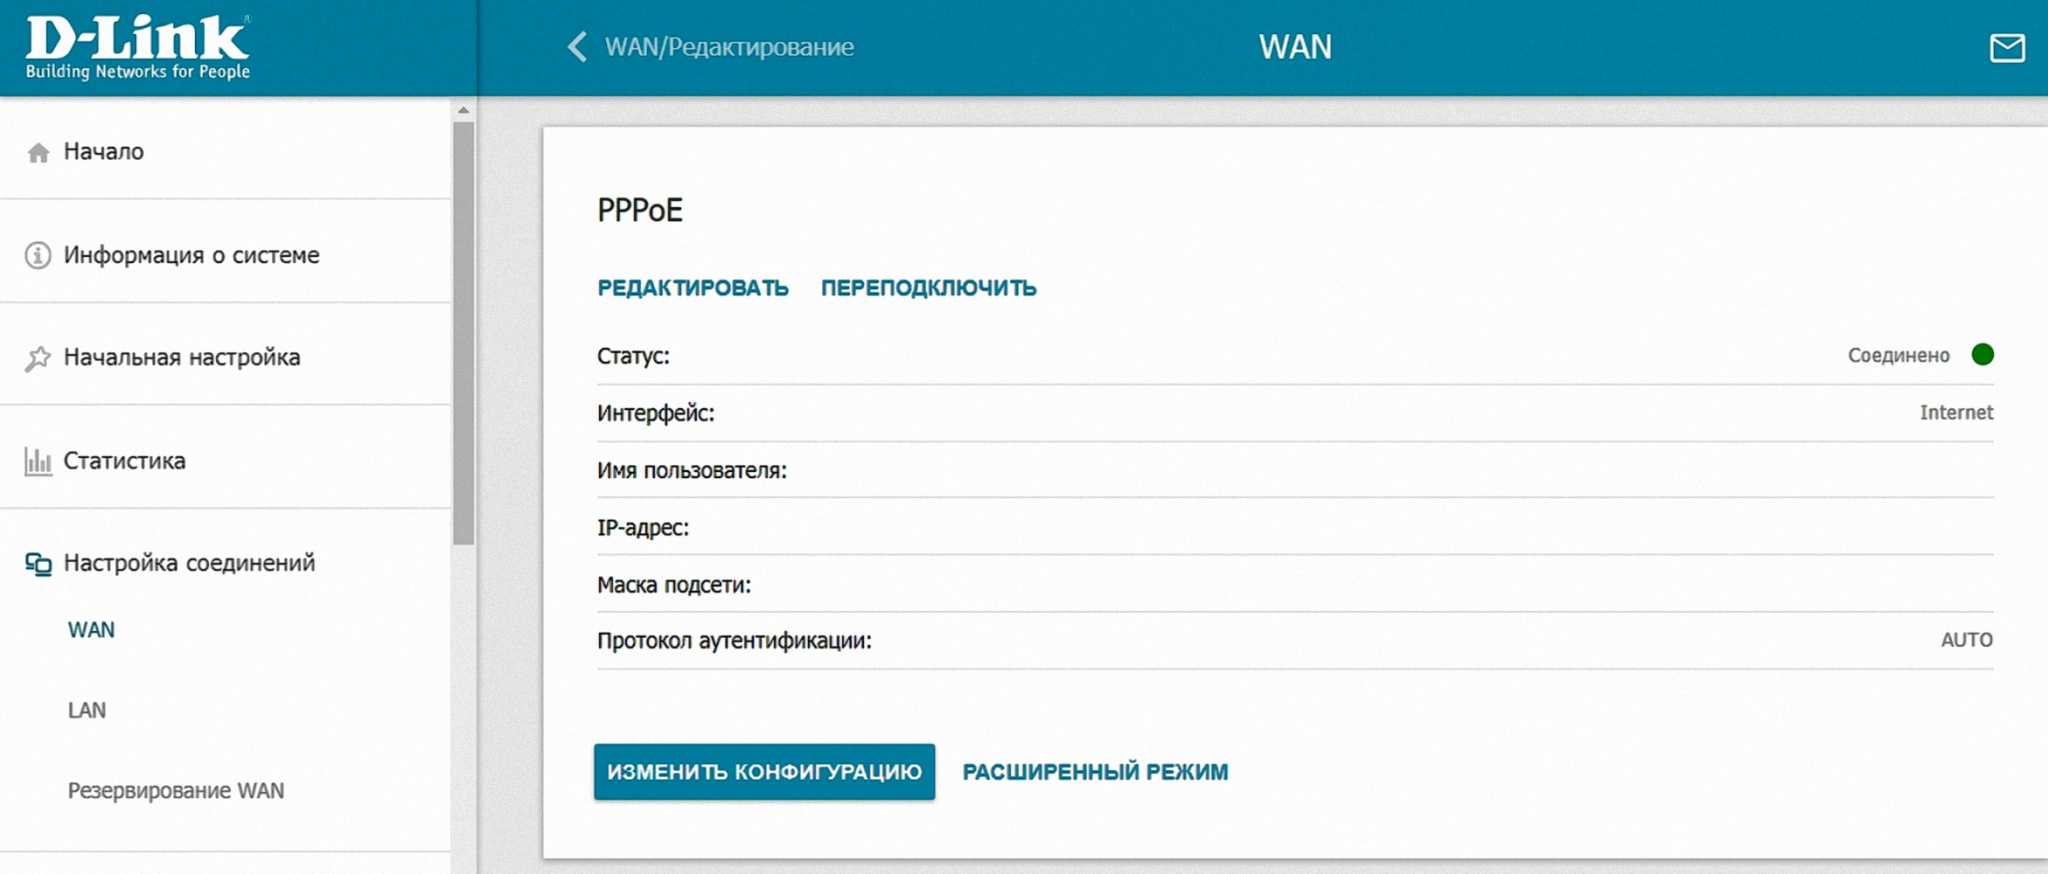 Wi-fi-роутер d-link dir-825: обзор, характеристики, настройка и отзывы :: syl.ru